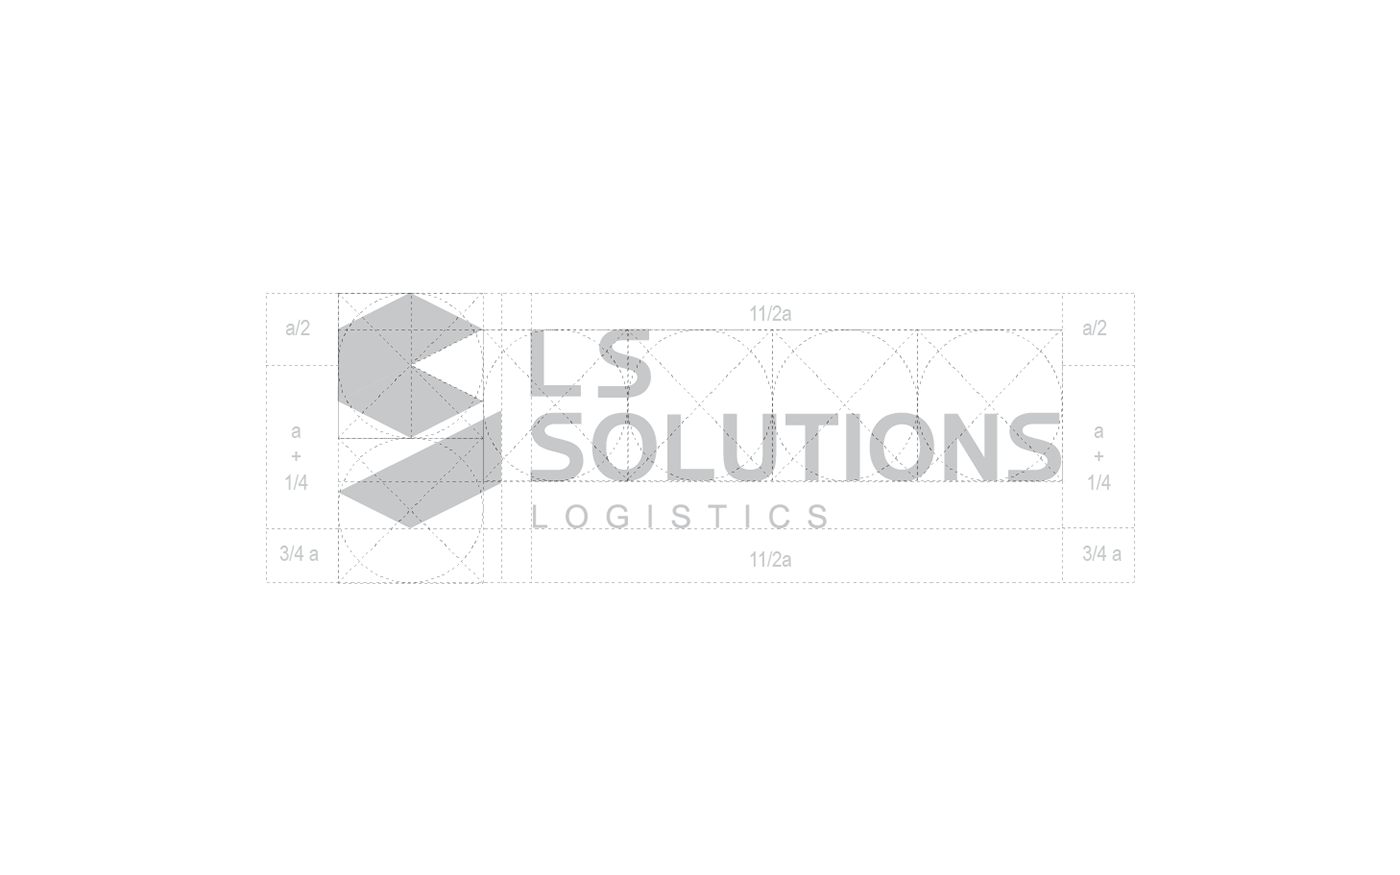 lssolutions logistic LOGISTICA spedizioni shipment delivery